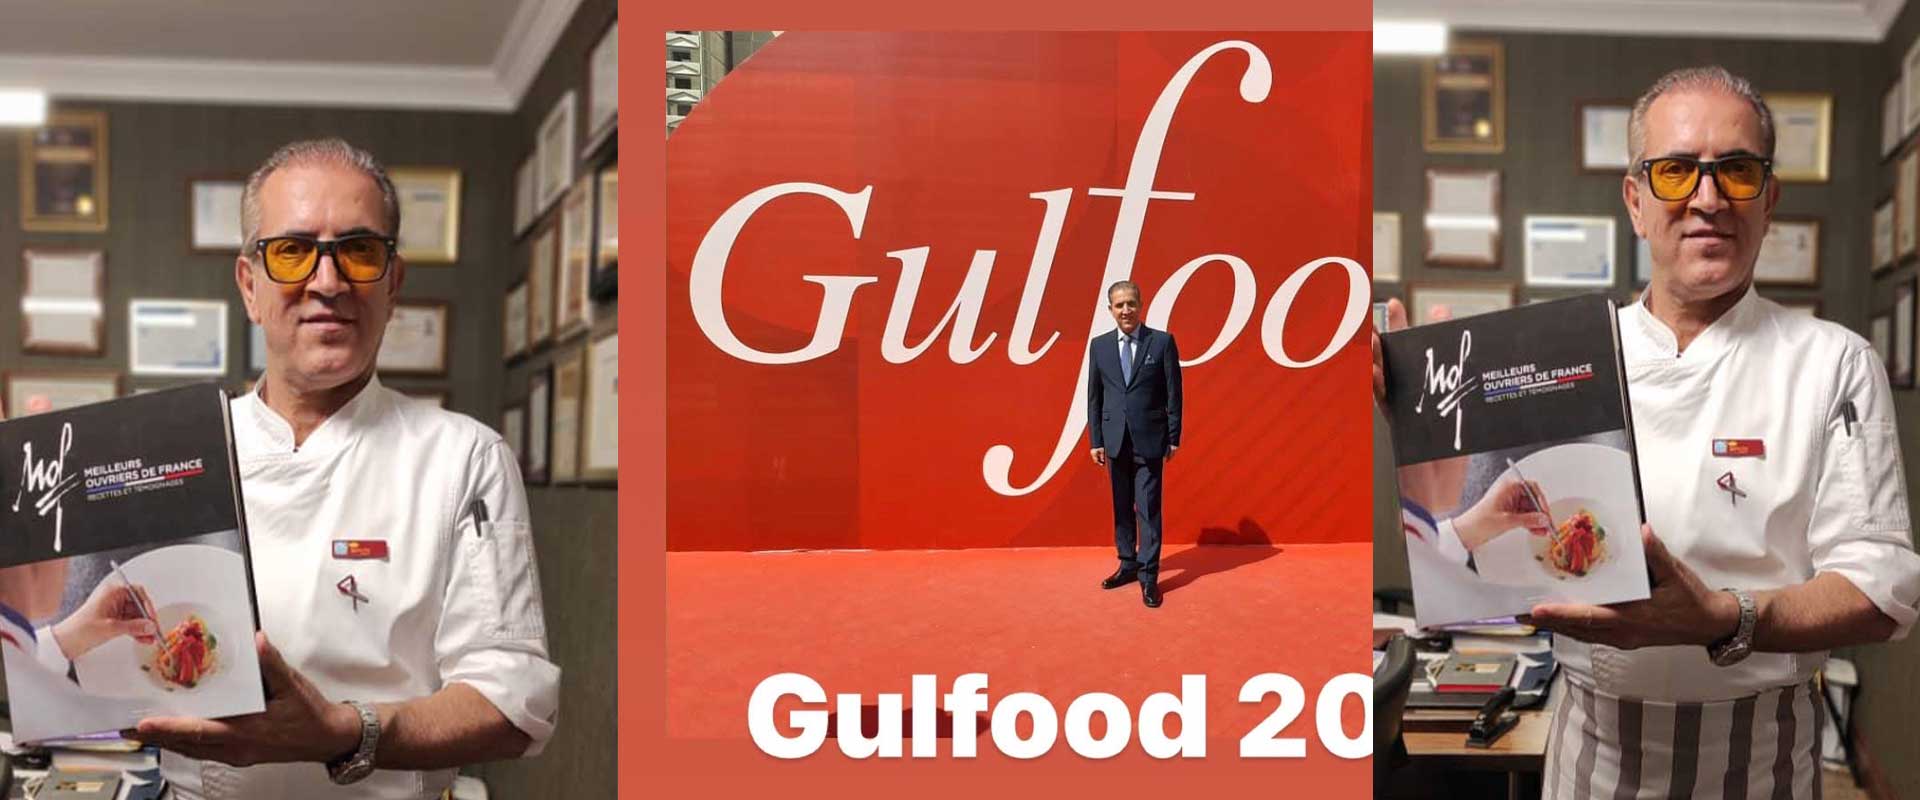 حضور آکاد می ایران شف در نمایشگاه غذا و نوشیدنی دبی gulfood